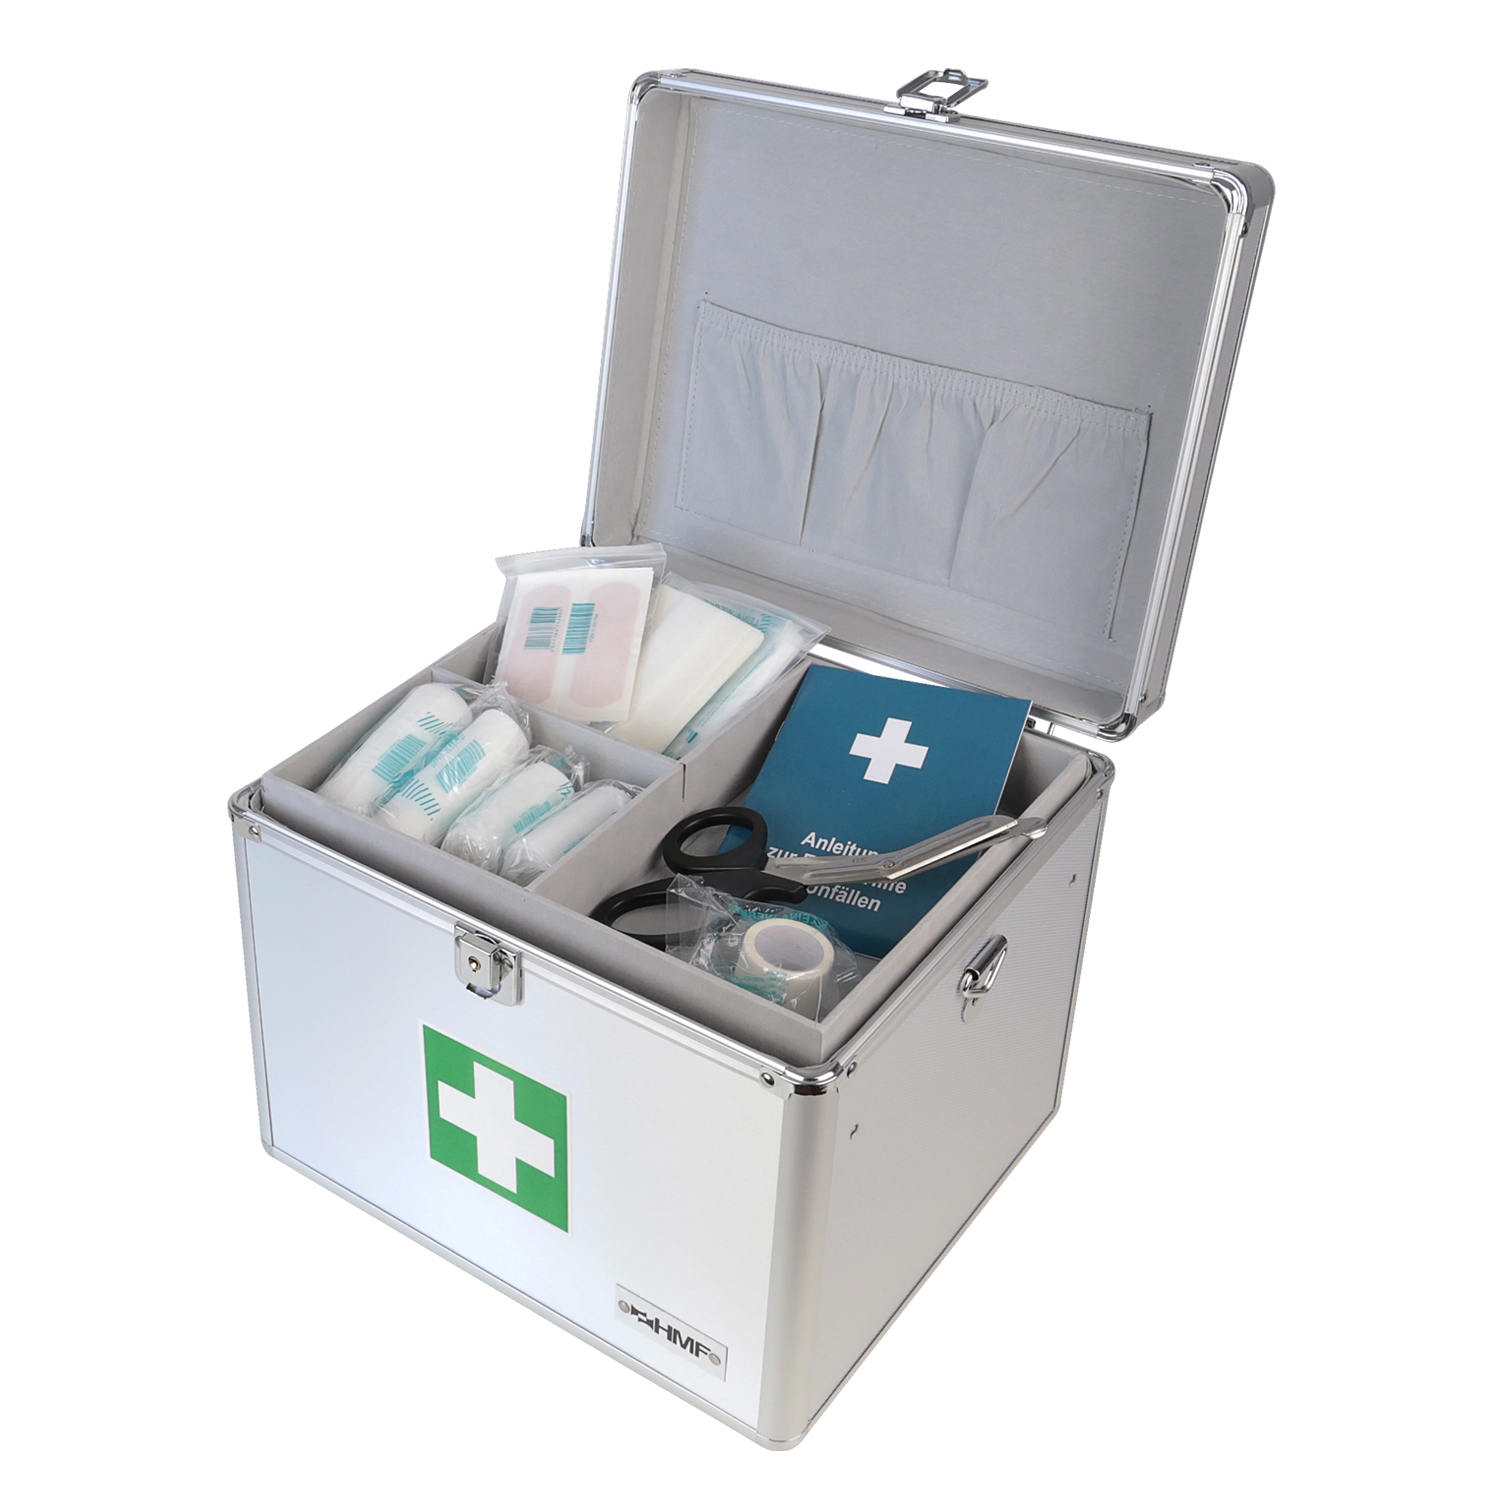 Medizinkoffer oder Erste Hilfe Koffer aus Aluminium von HMF mit den Maßen 30 x 25 x 25 cm in Silber